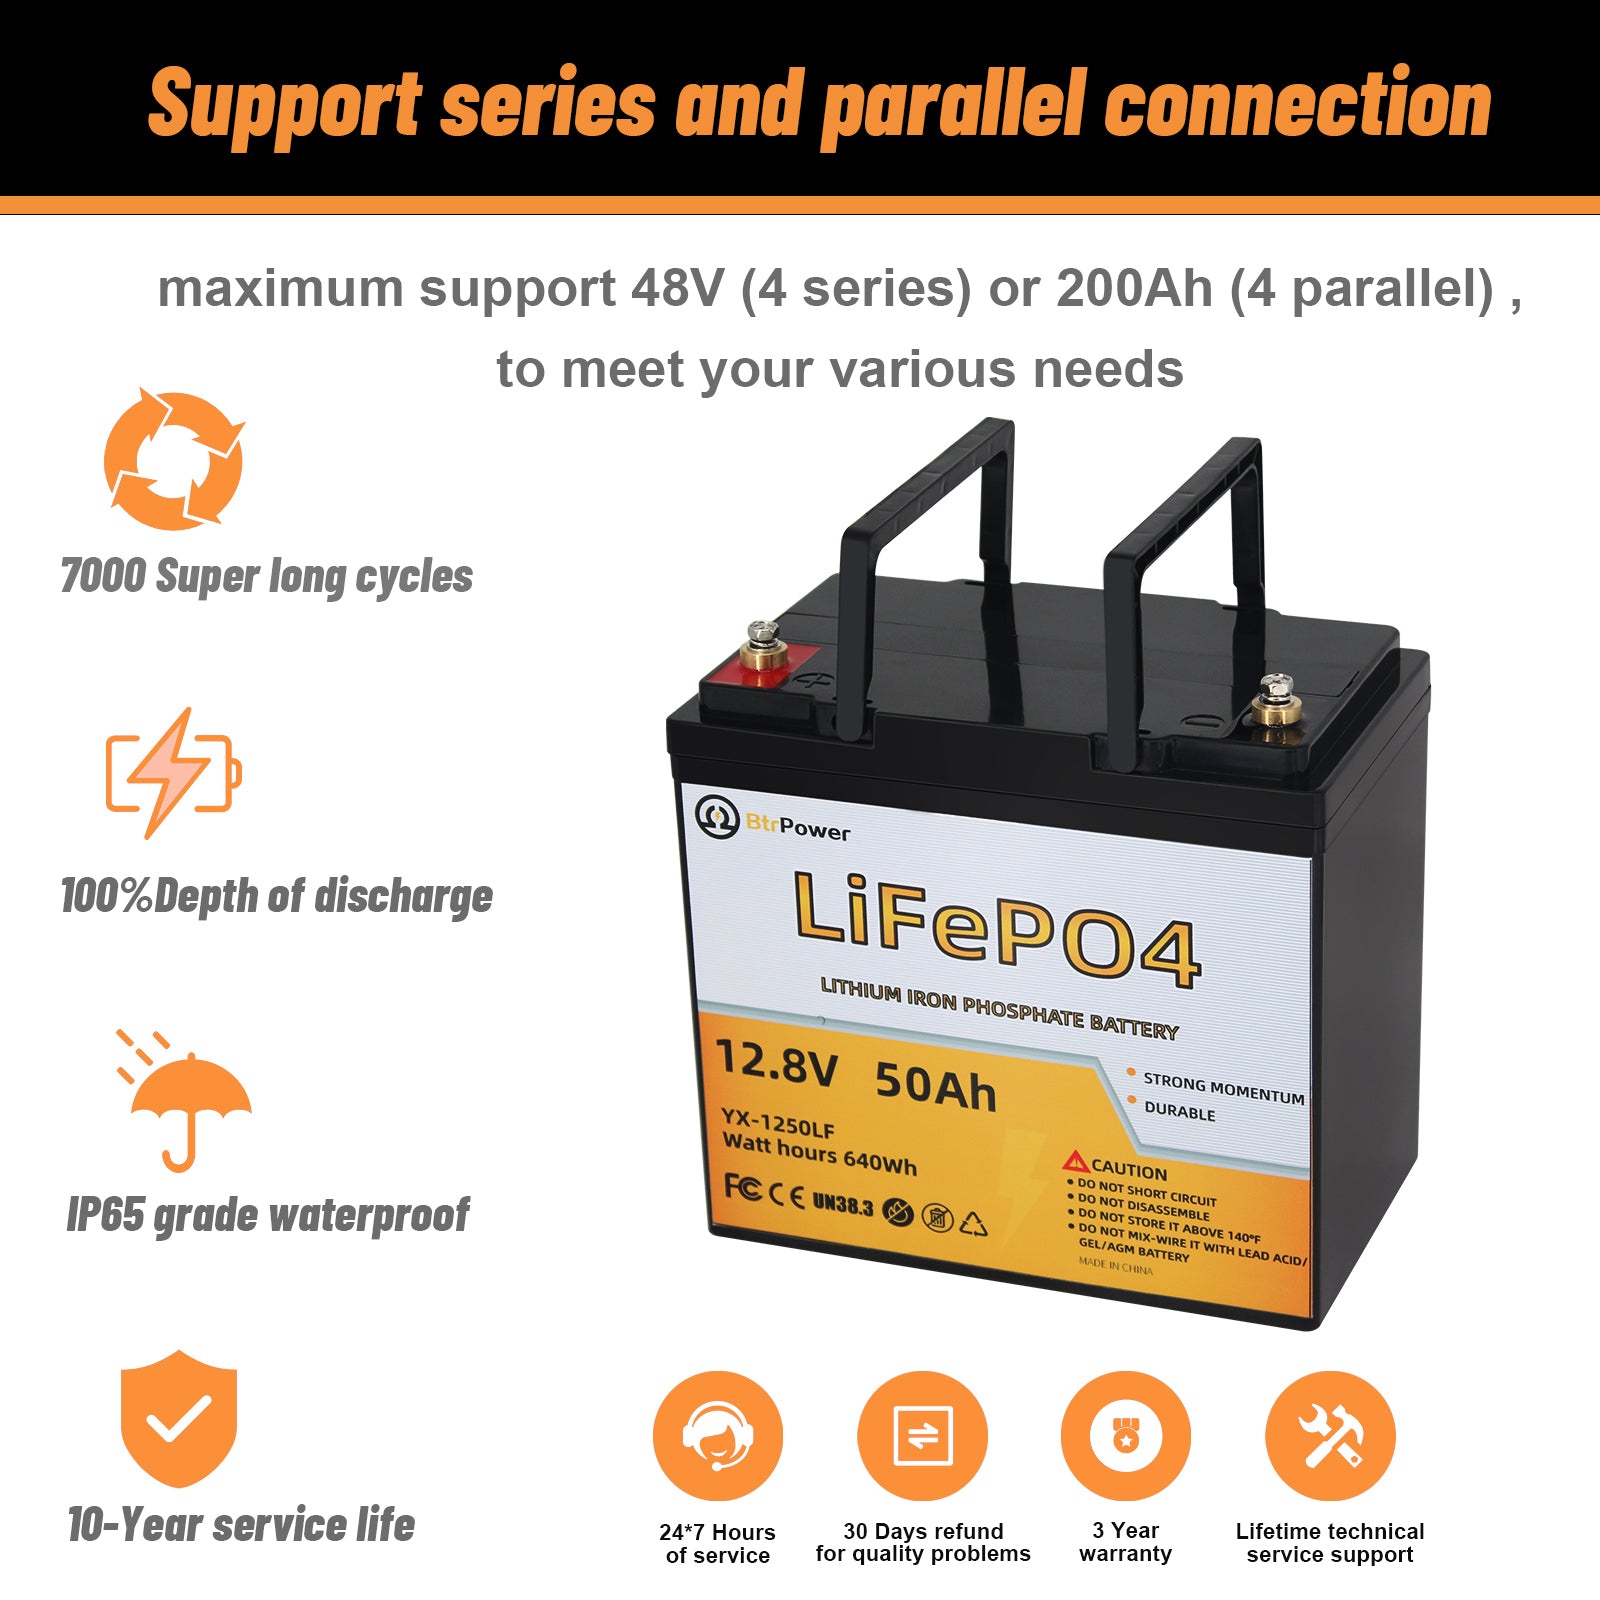 lifepo4 battery 12v 50ah